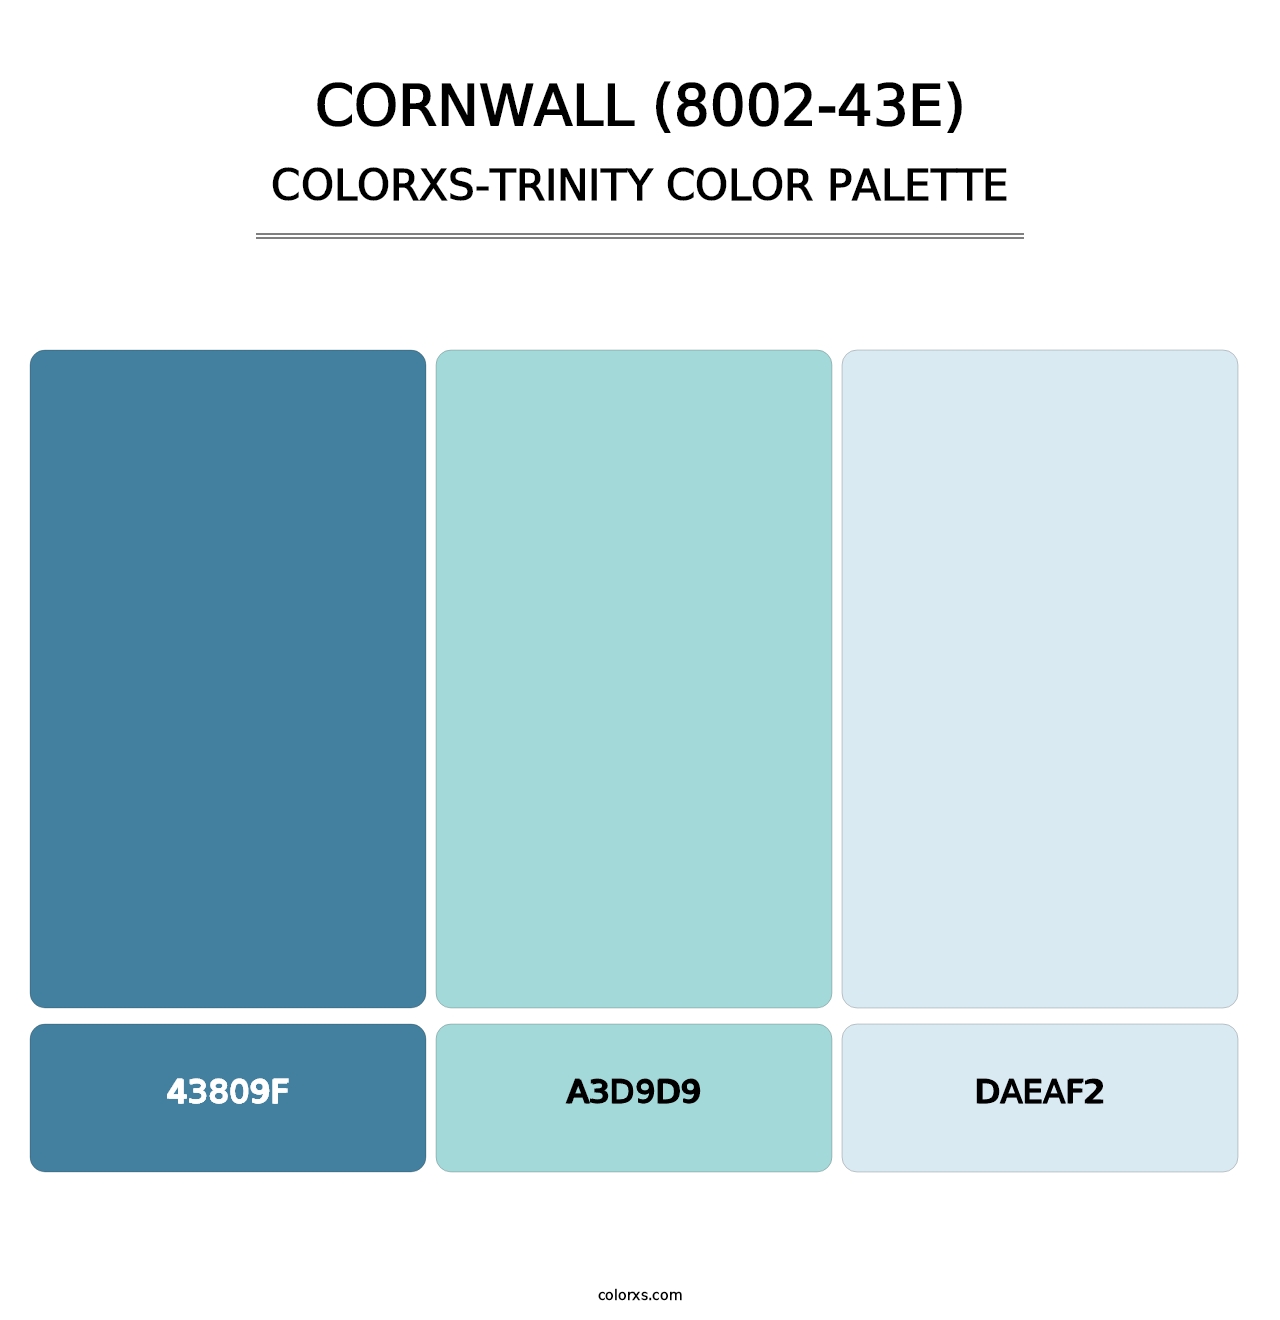 Cornwall (8002-43E) - Colorxs Trinity Palette